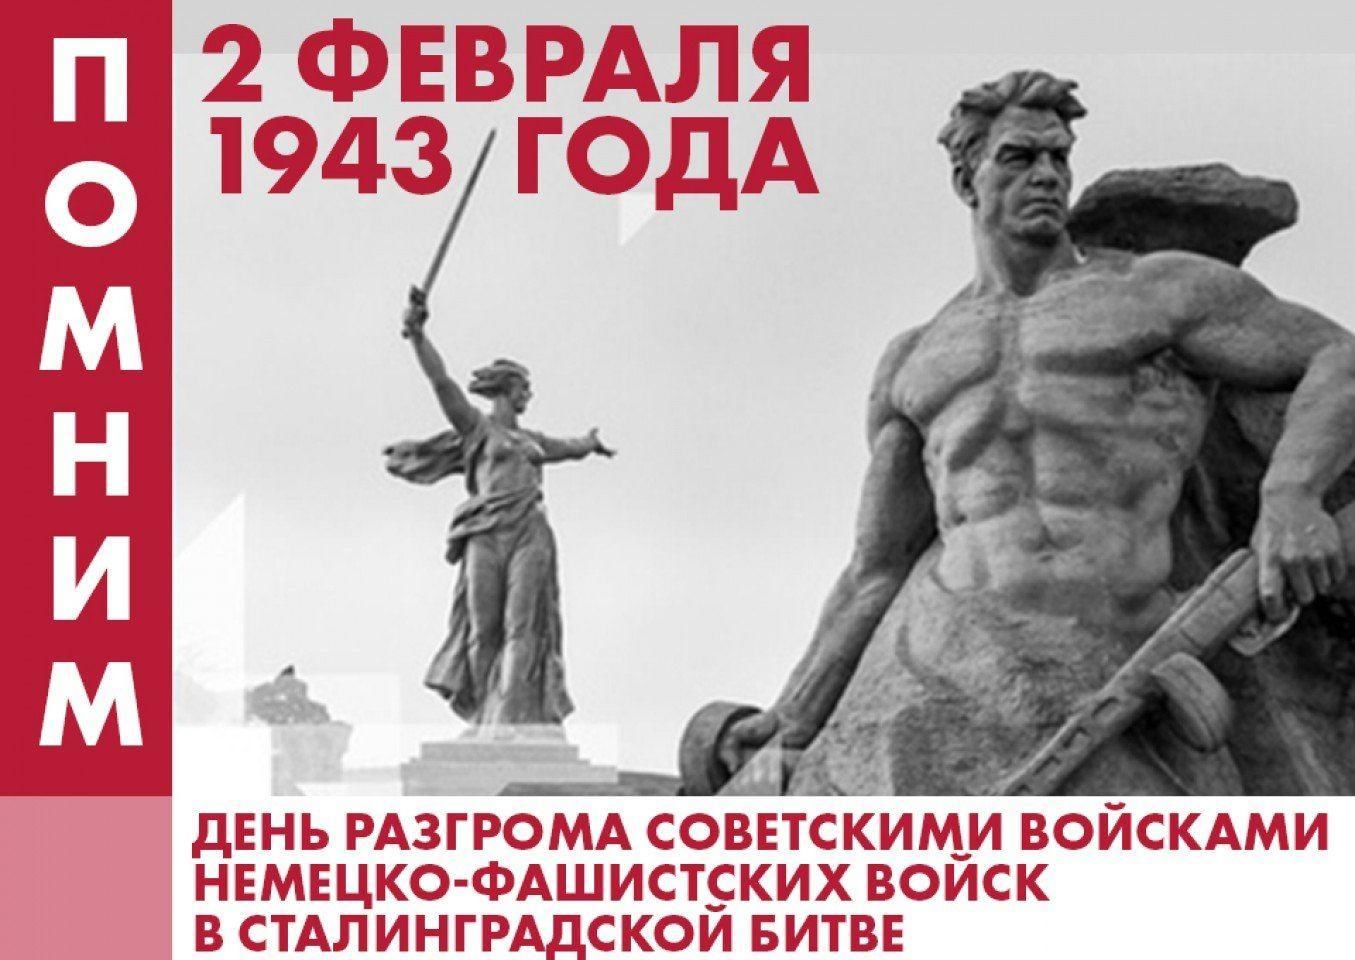 Мероприятие, приуроченное к празднованию 80-летия разгрома советскими войсками немецко-фашистских войск в Сталинградской битве.